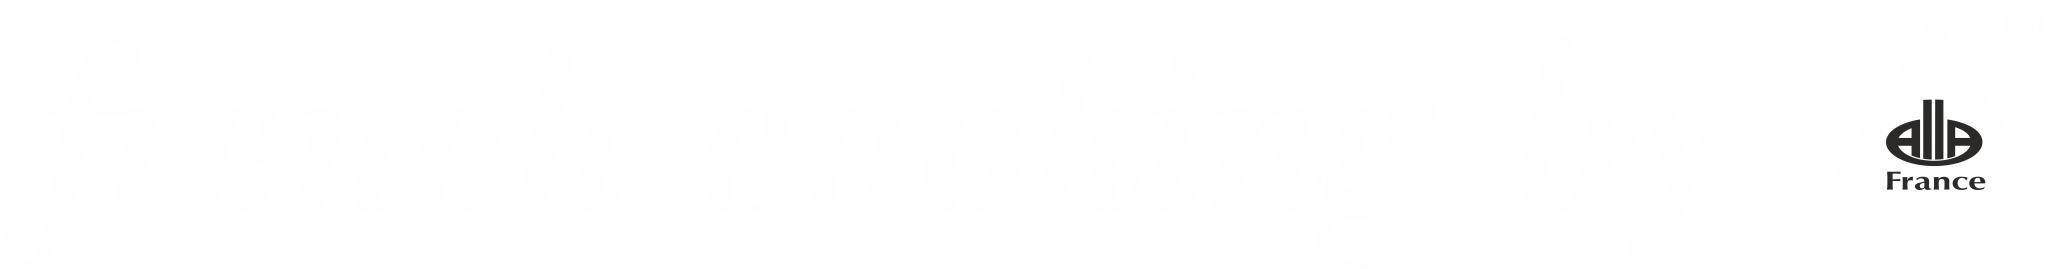 Logo FrencCooking